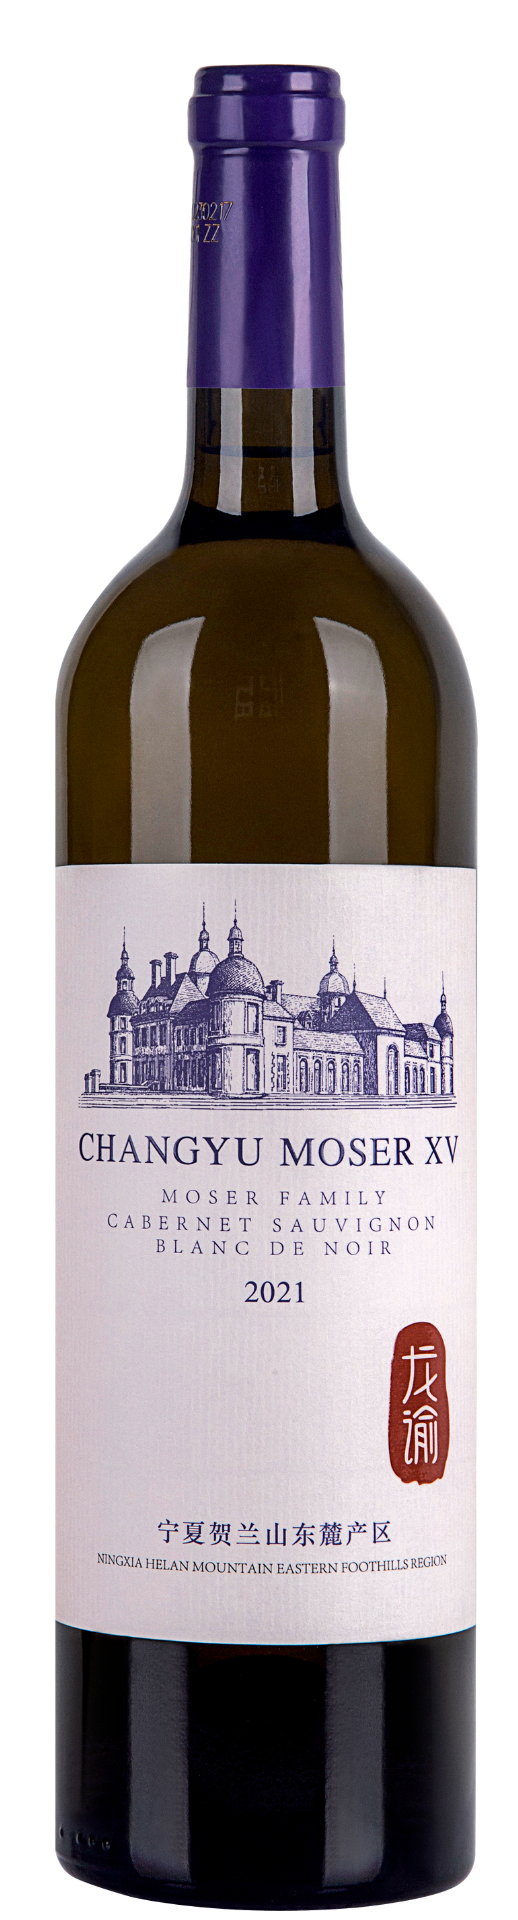 Moser Family Cabernet Sauvignon Blanc de Noir, Bor - Changyu Moser XV